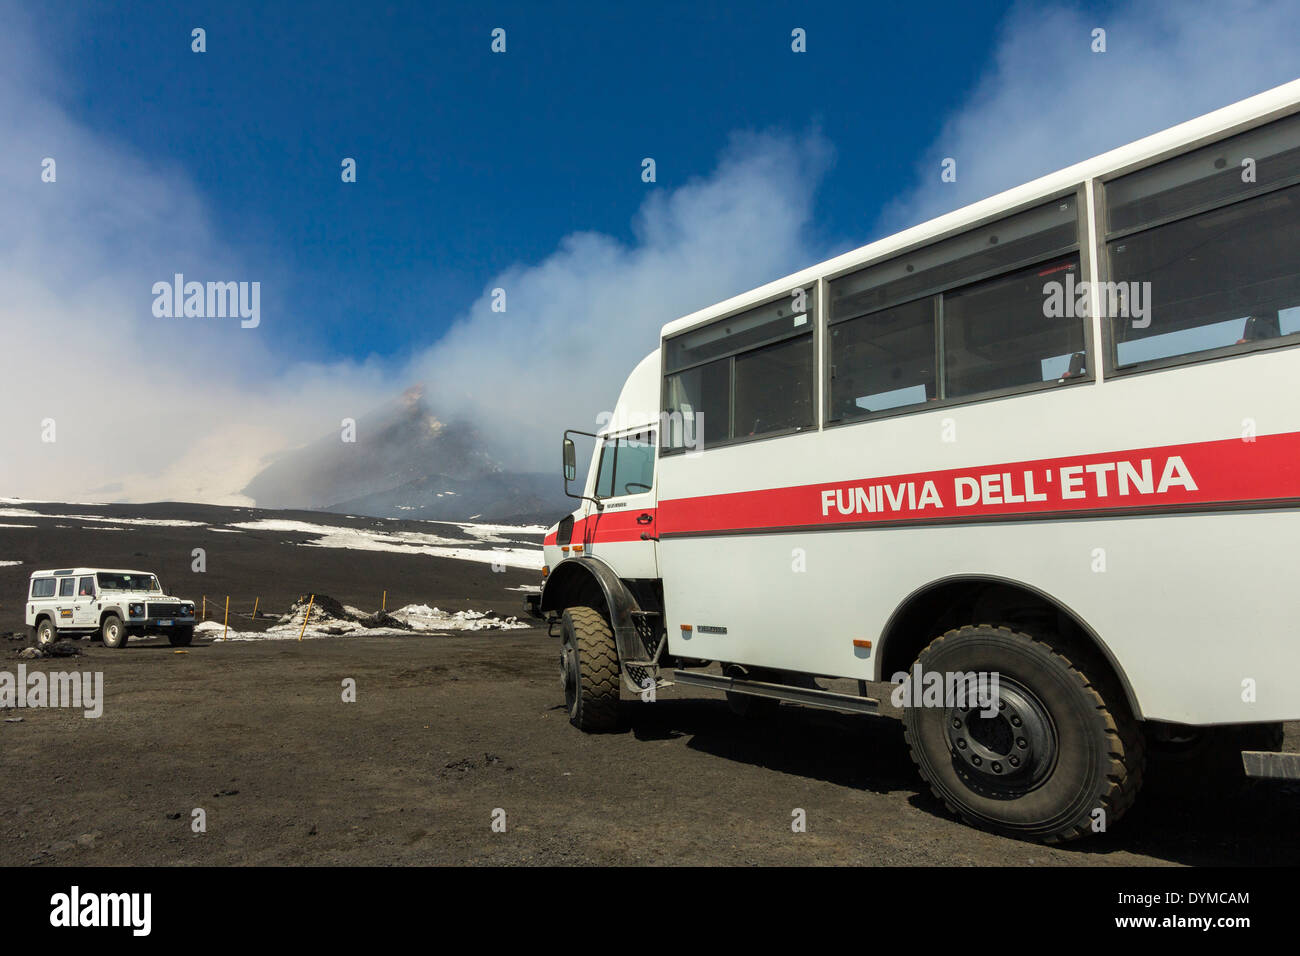 Veicolo fuoristrada in prossimità del vertice per fumatori di 3350m vulcano Etna durante una fase attiva; il monte Etna, Sicilia, Italia Foto Stock